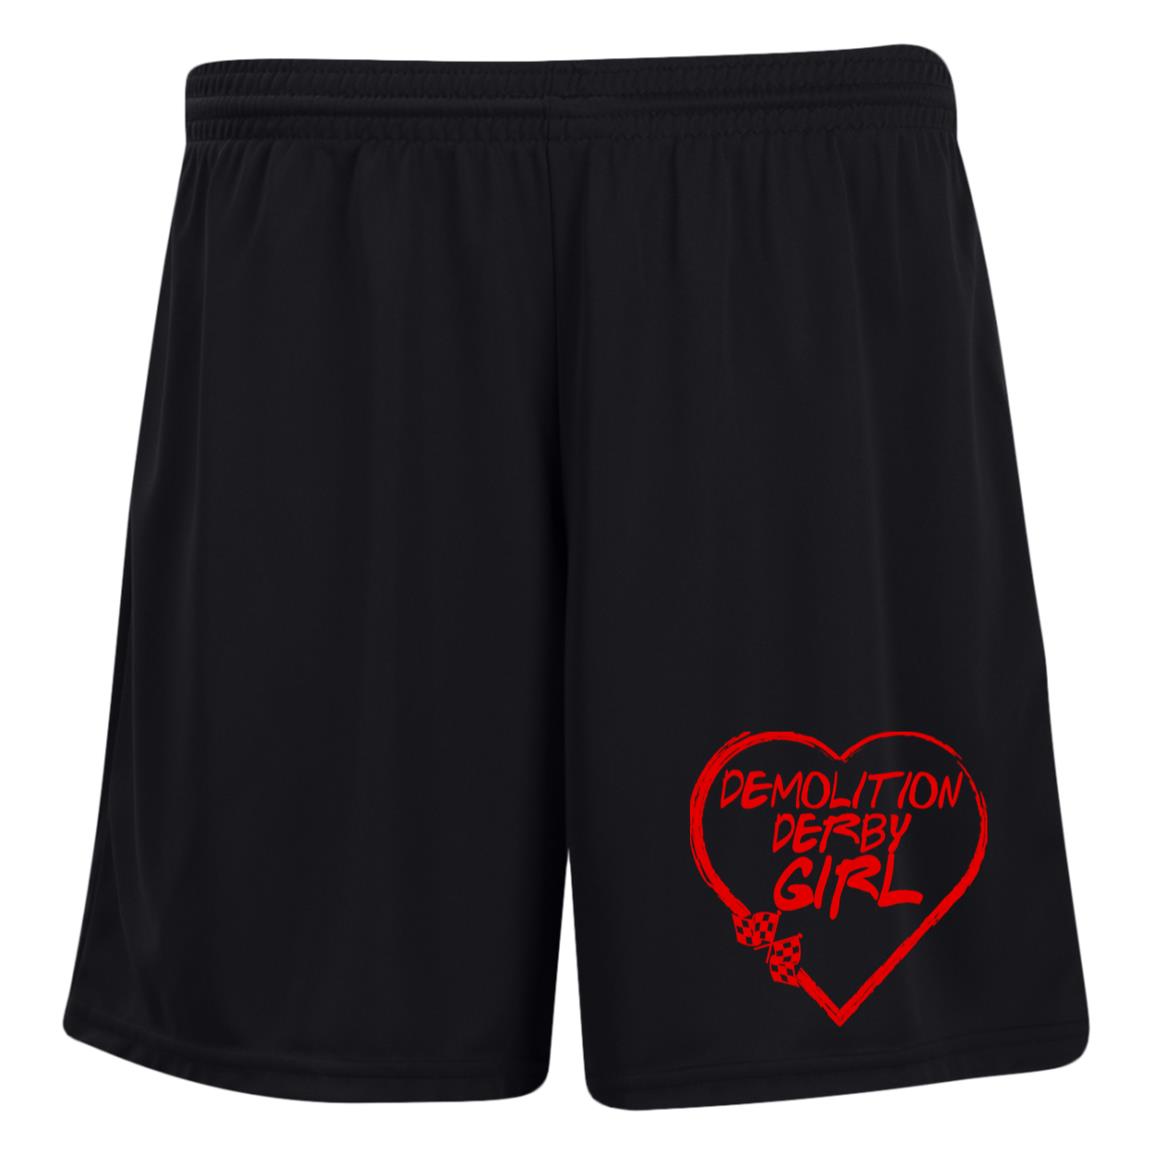 Demolition Derby Girl Heart Ladies' Moisture-Wicking 7 inch Inseam Training Shorts